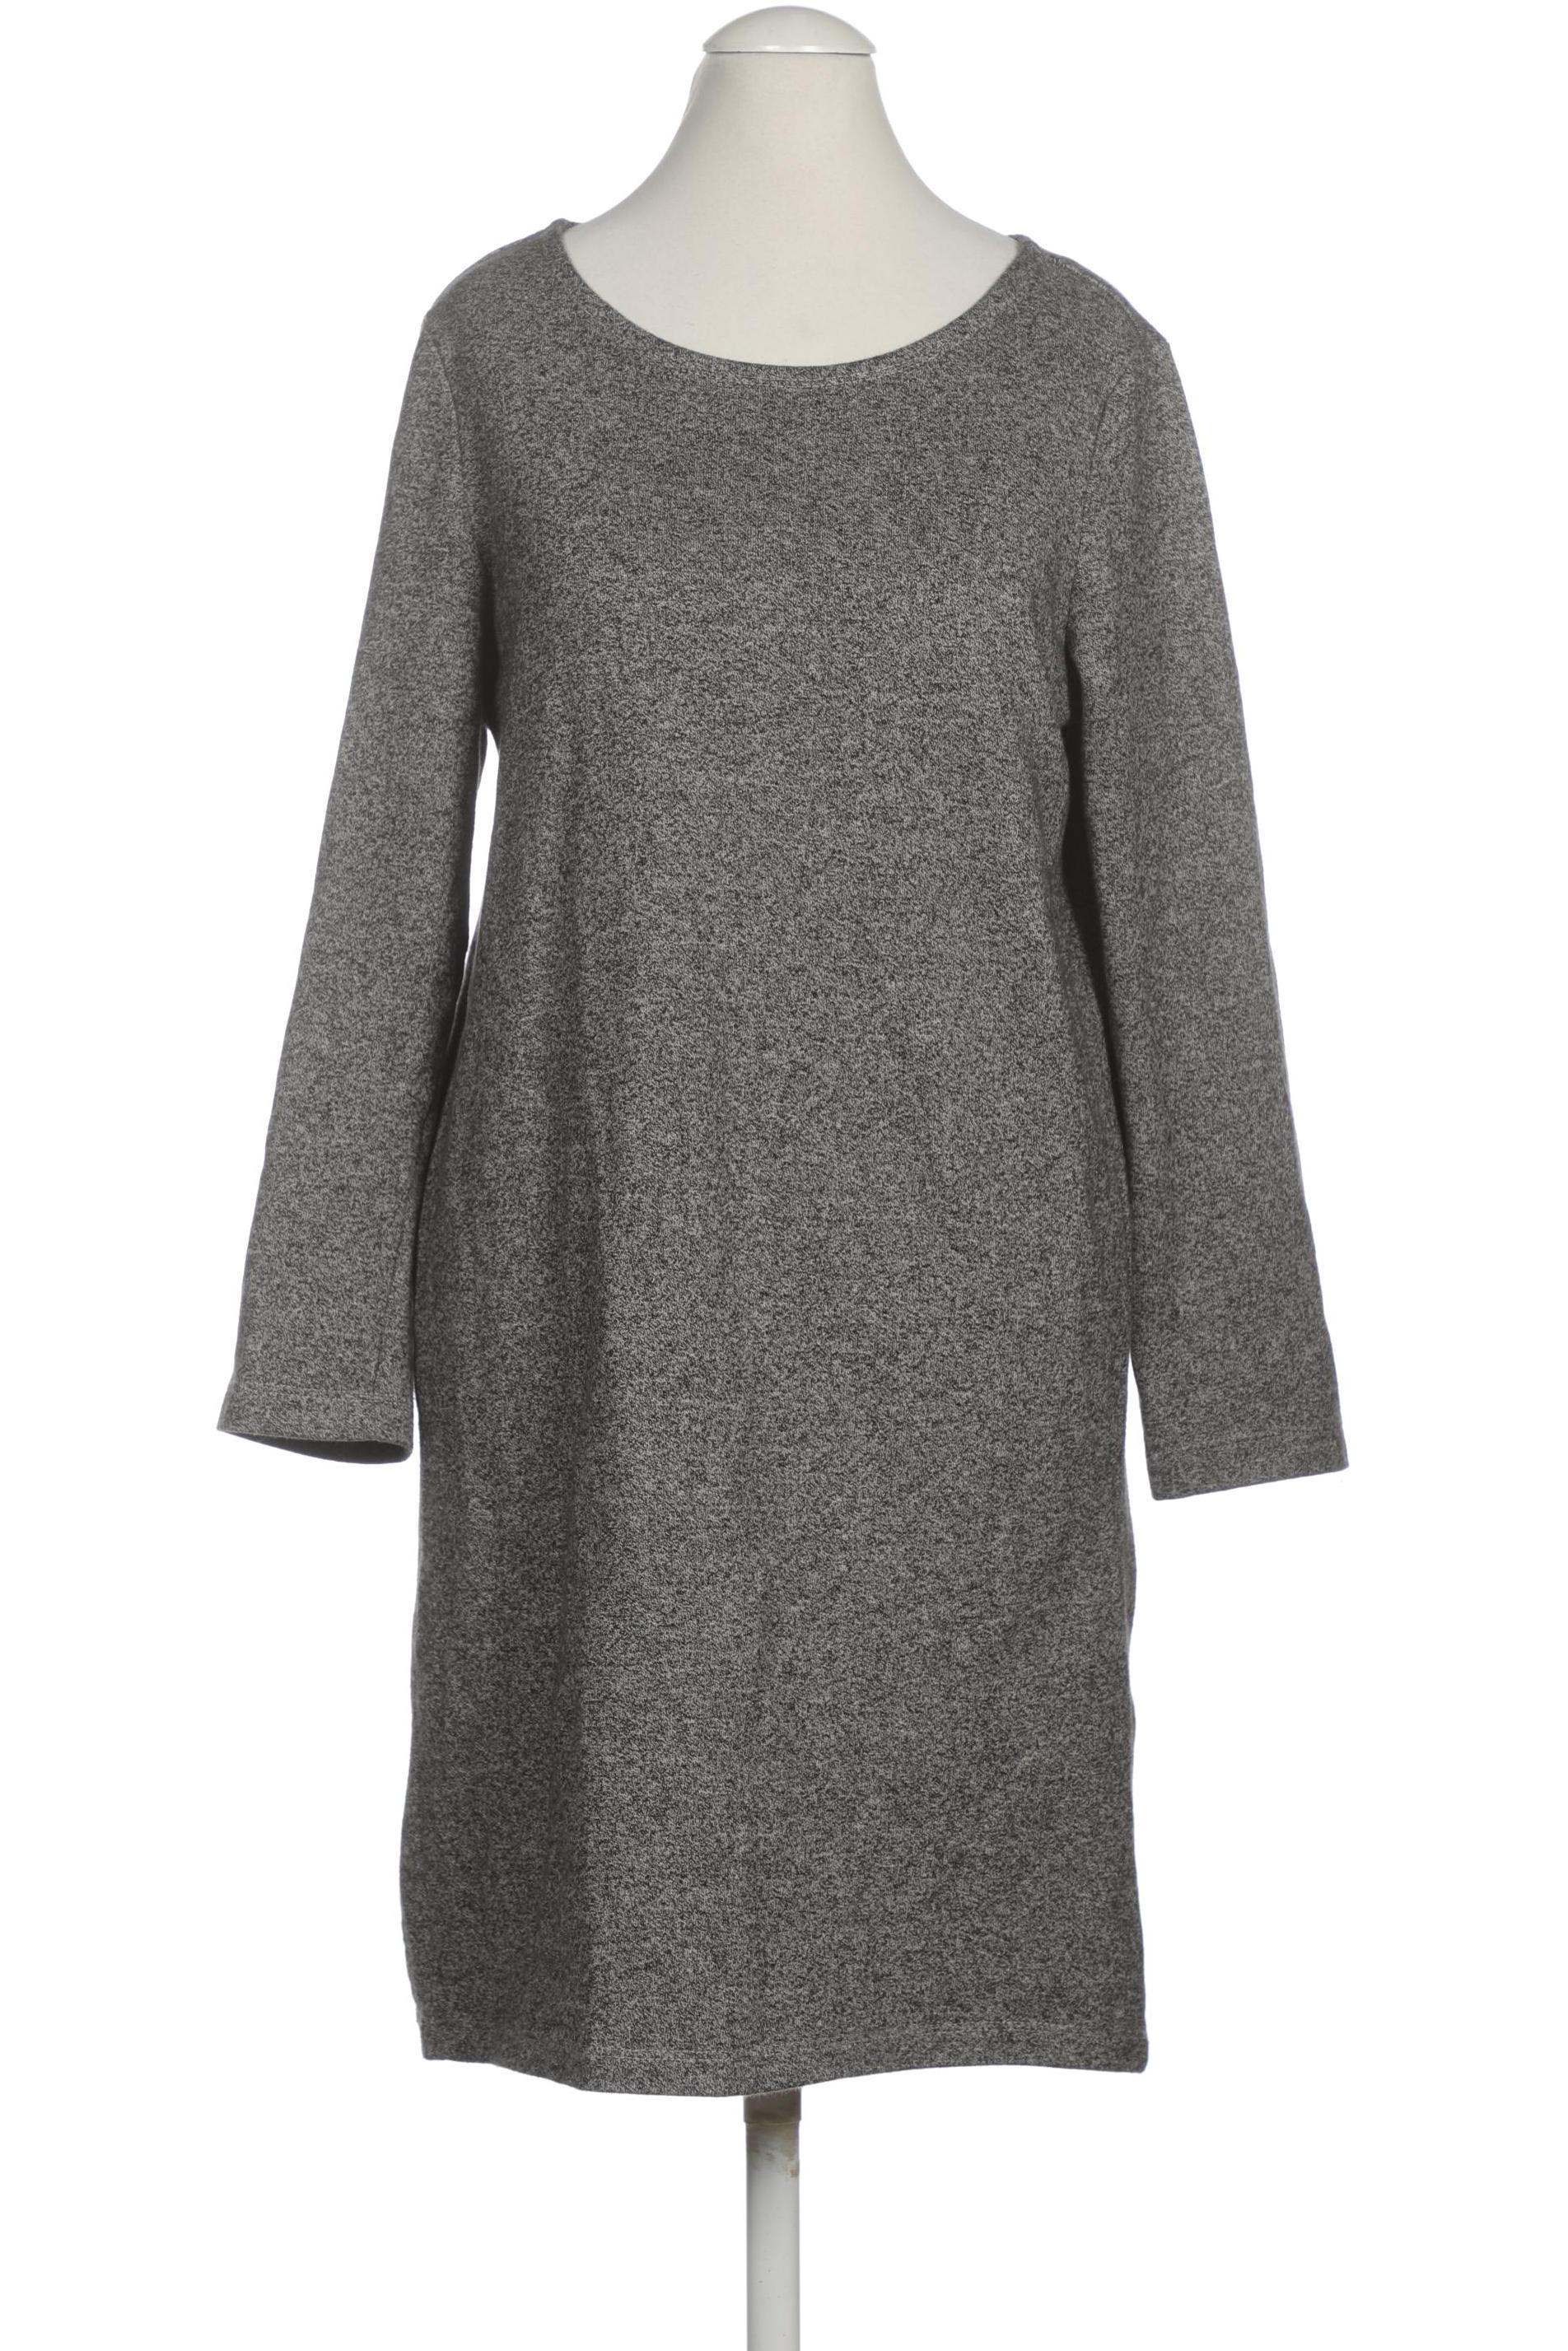 Monki Damen Kleid, grau, Gr. 34 von Monki